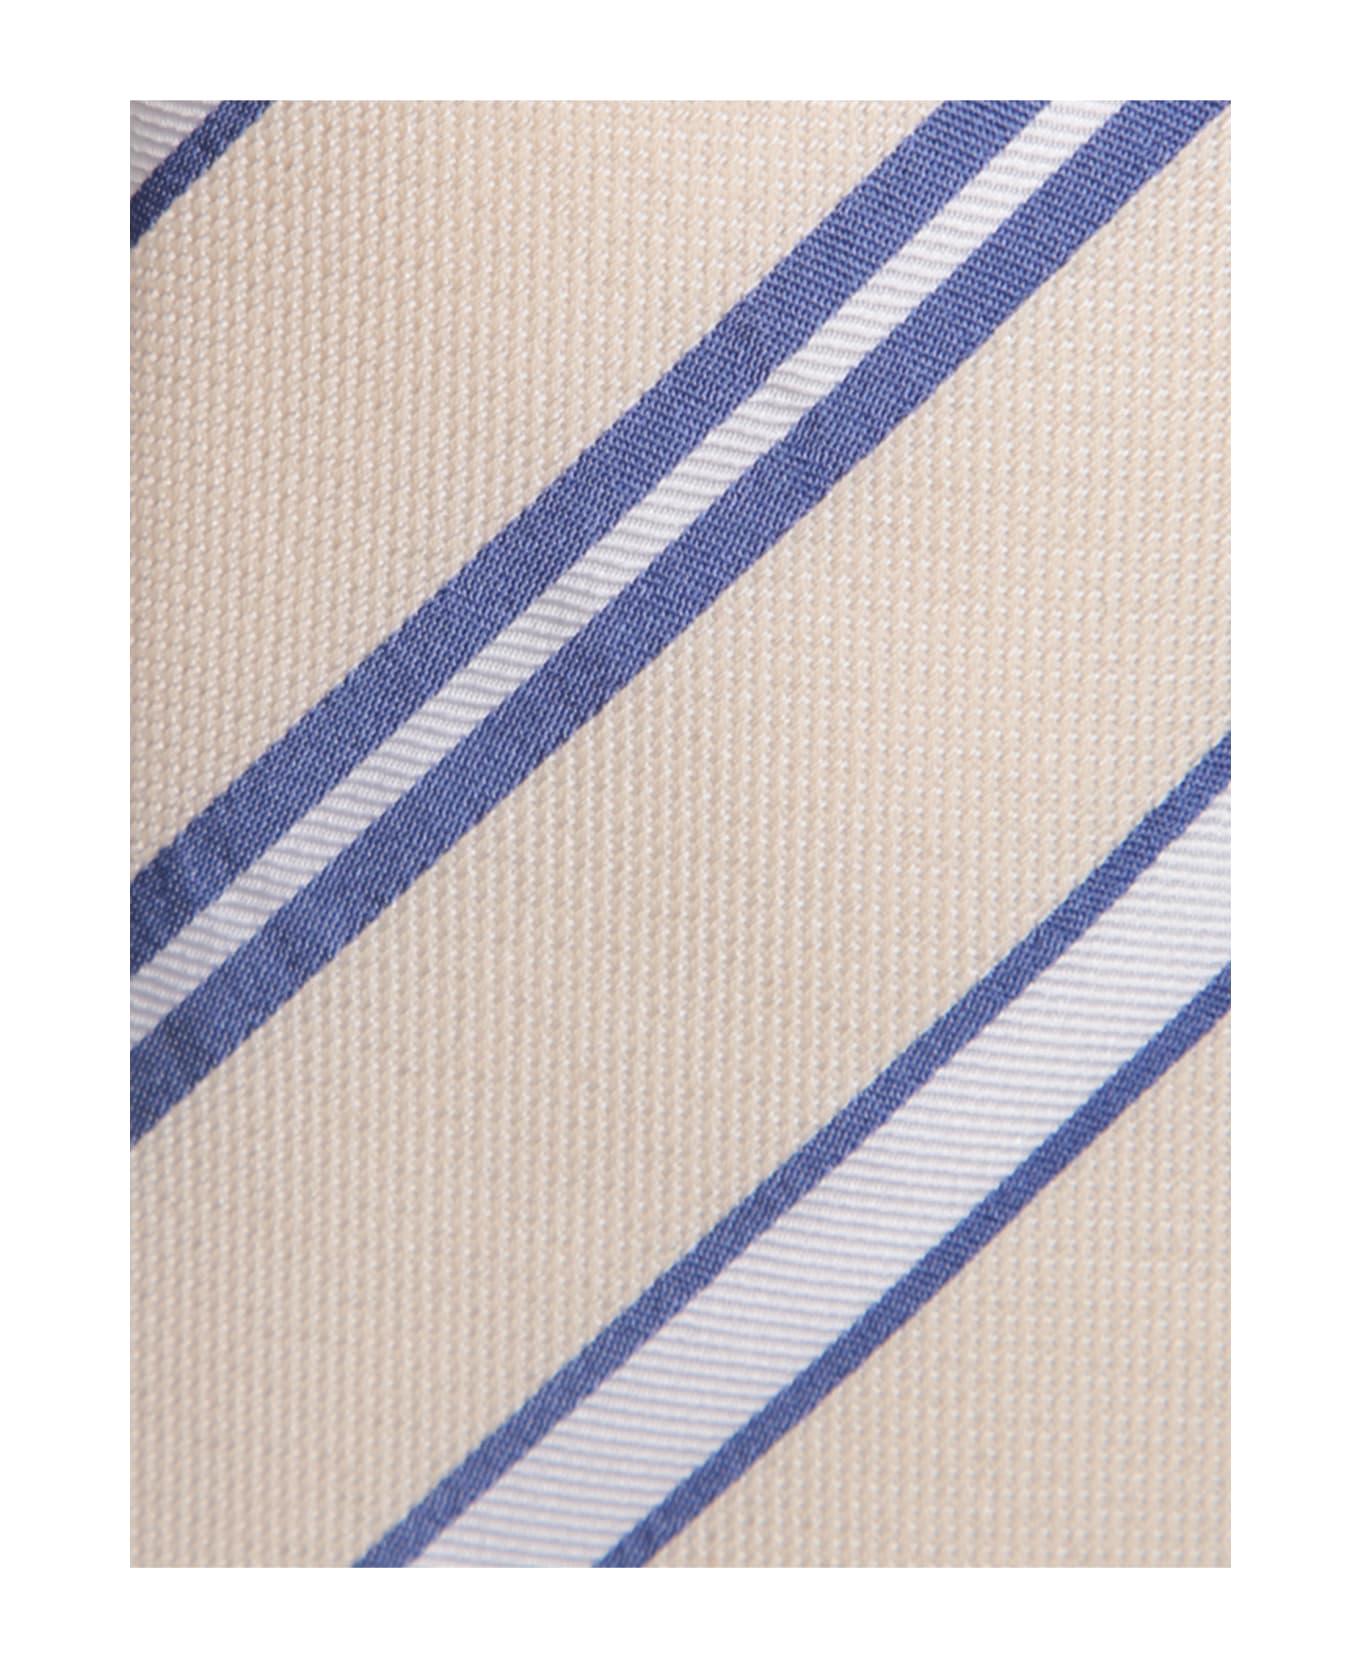 Lardini Cream/blue Regimental Tie - White